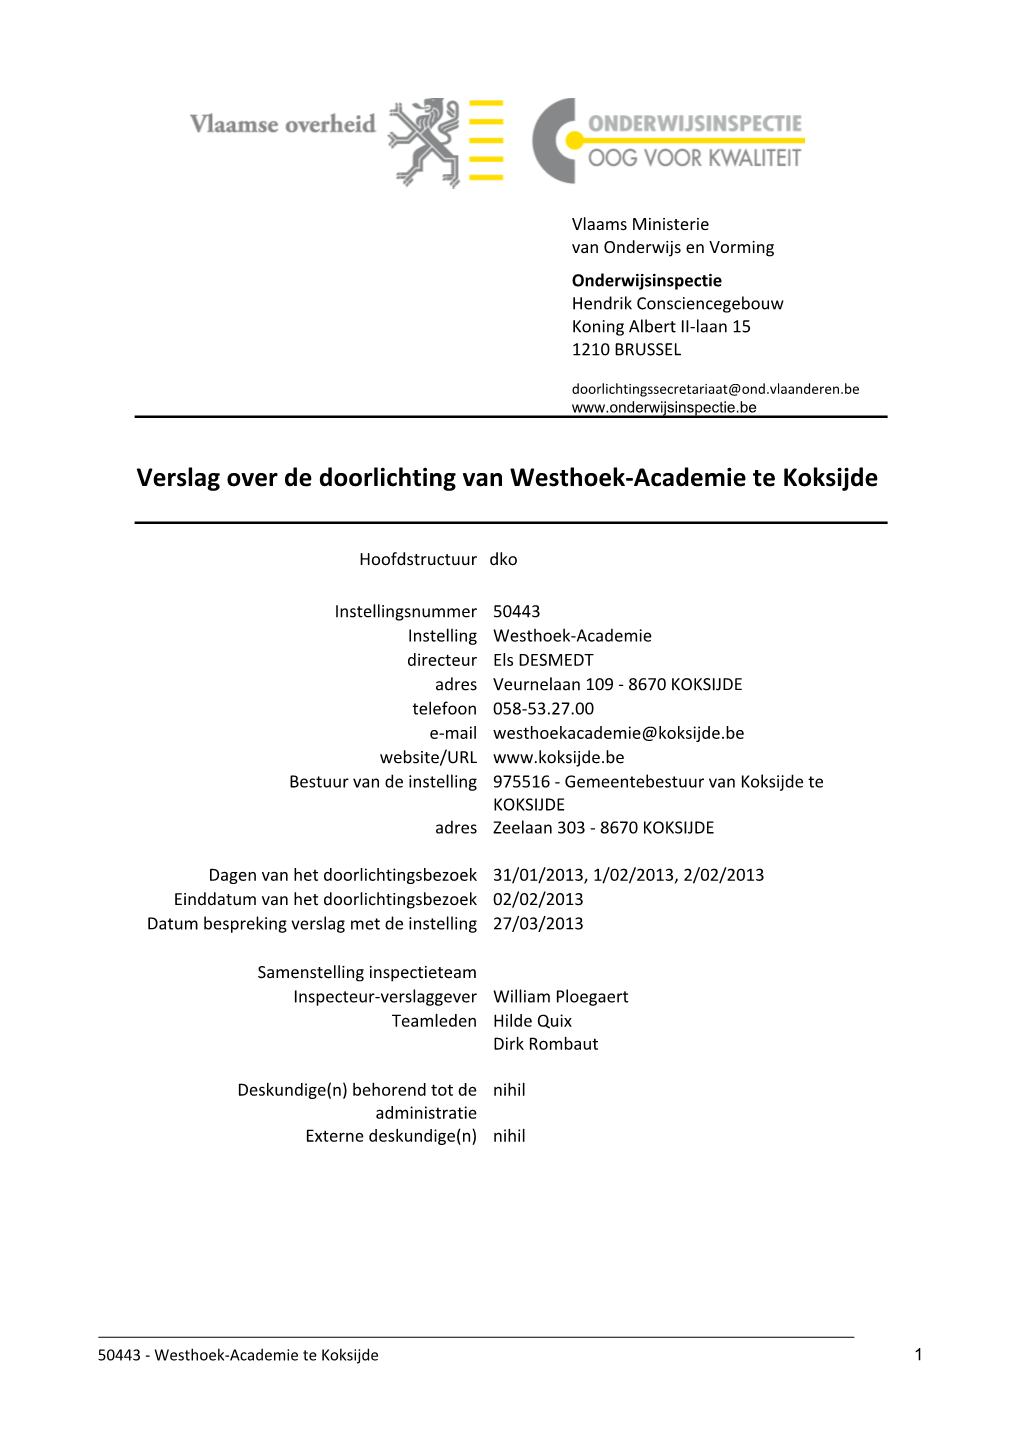 Verslag Over De Doorlichting Van Westhoek-Academie Te Koksijde